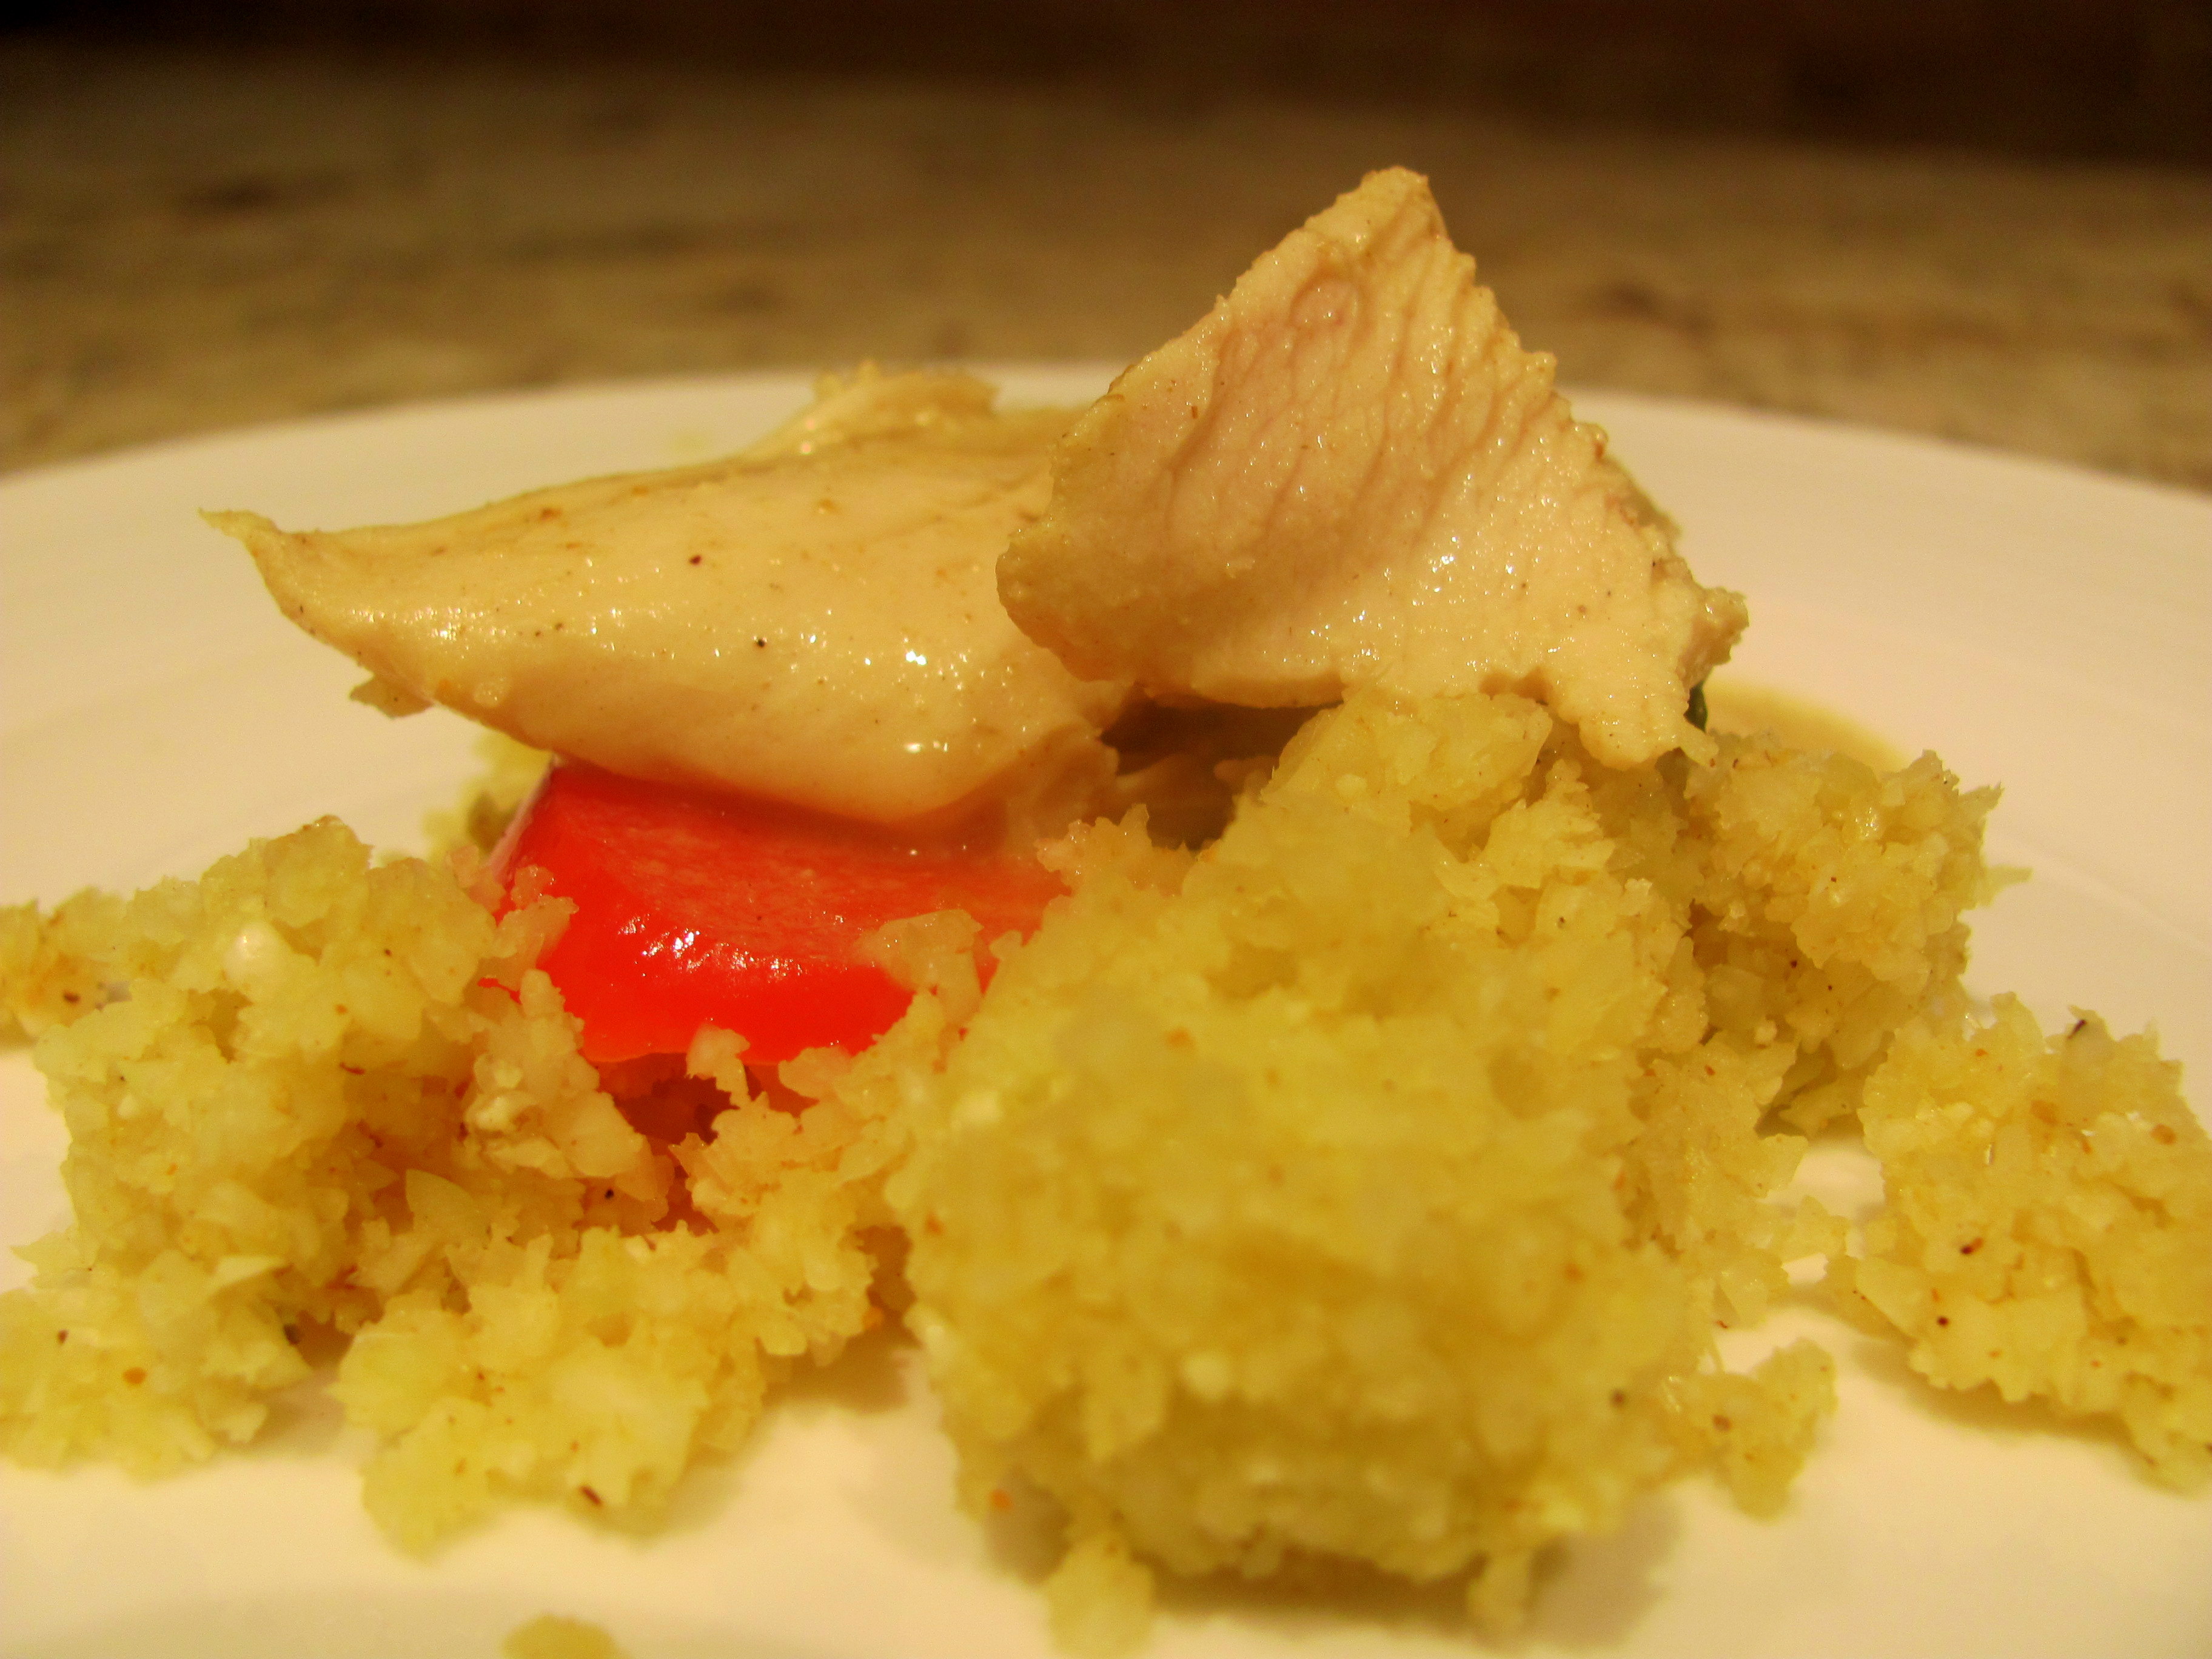 Chicken Curry with Cauliflower “Rice”